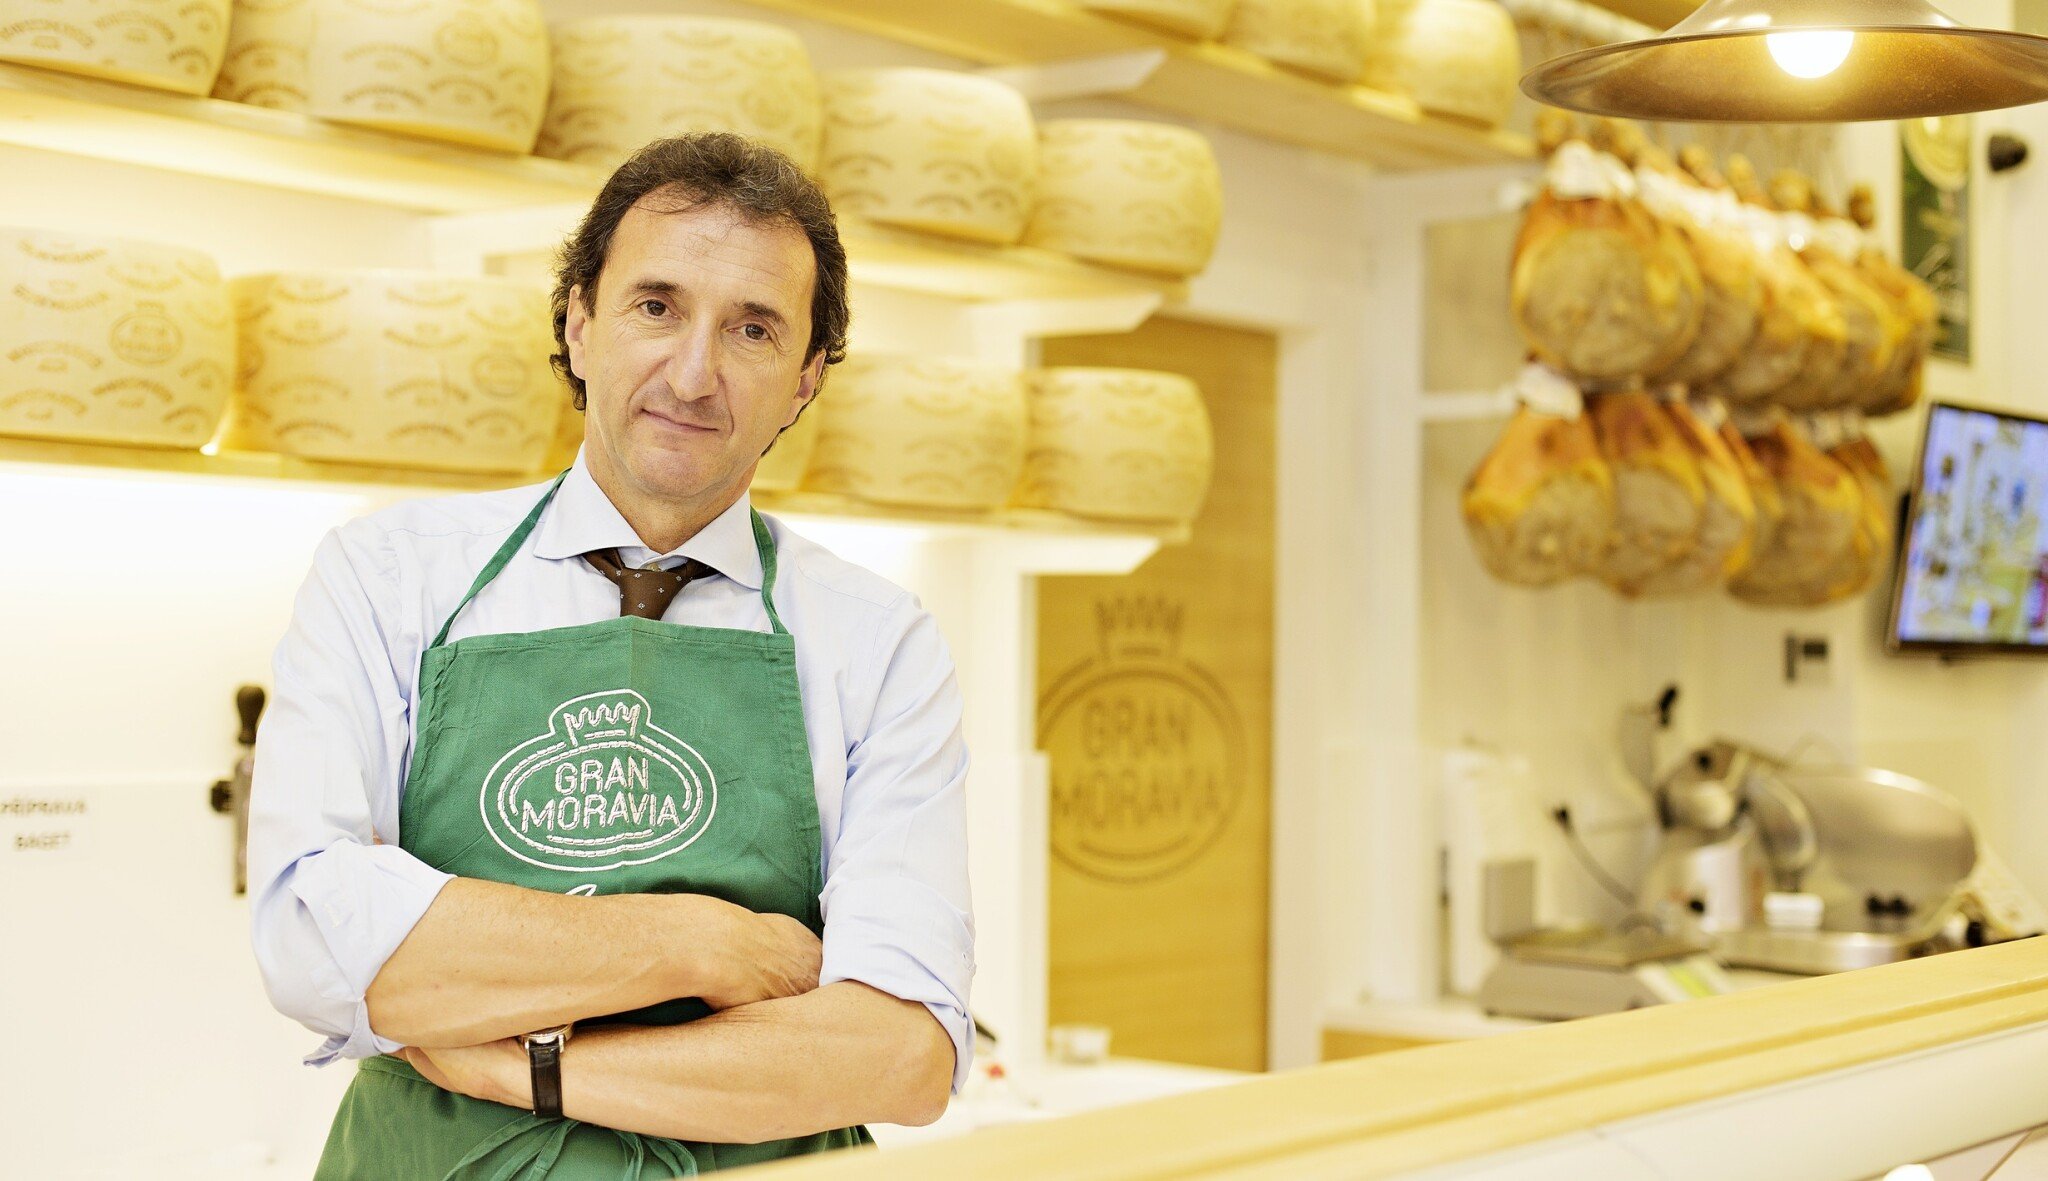 Krize nás všechny nachytala, ale poučili jsme se, říká italský vlastník sýrárny v Litovli